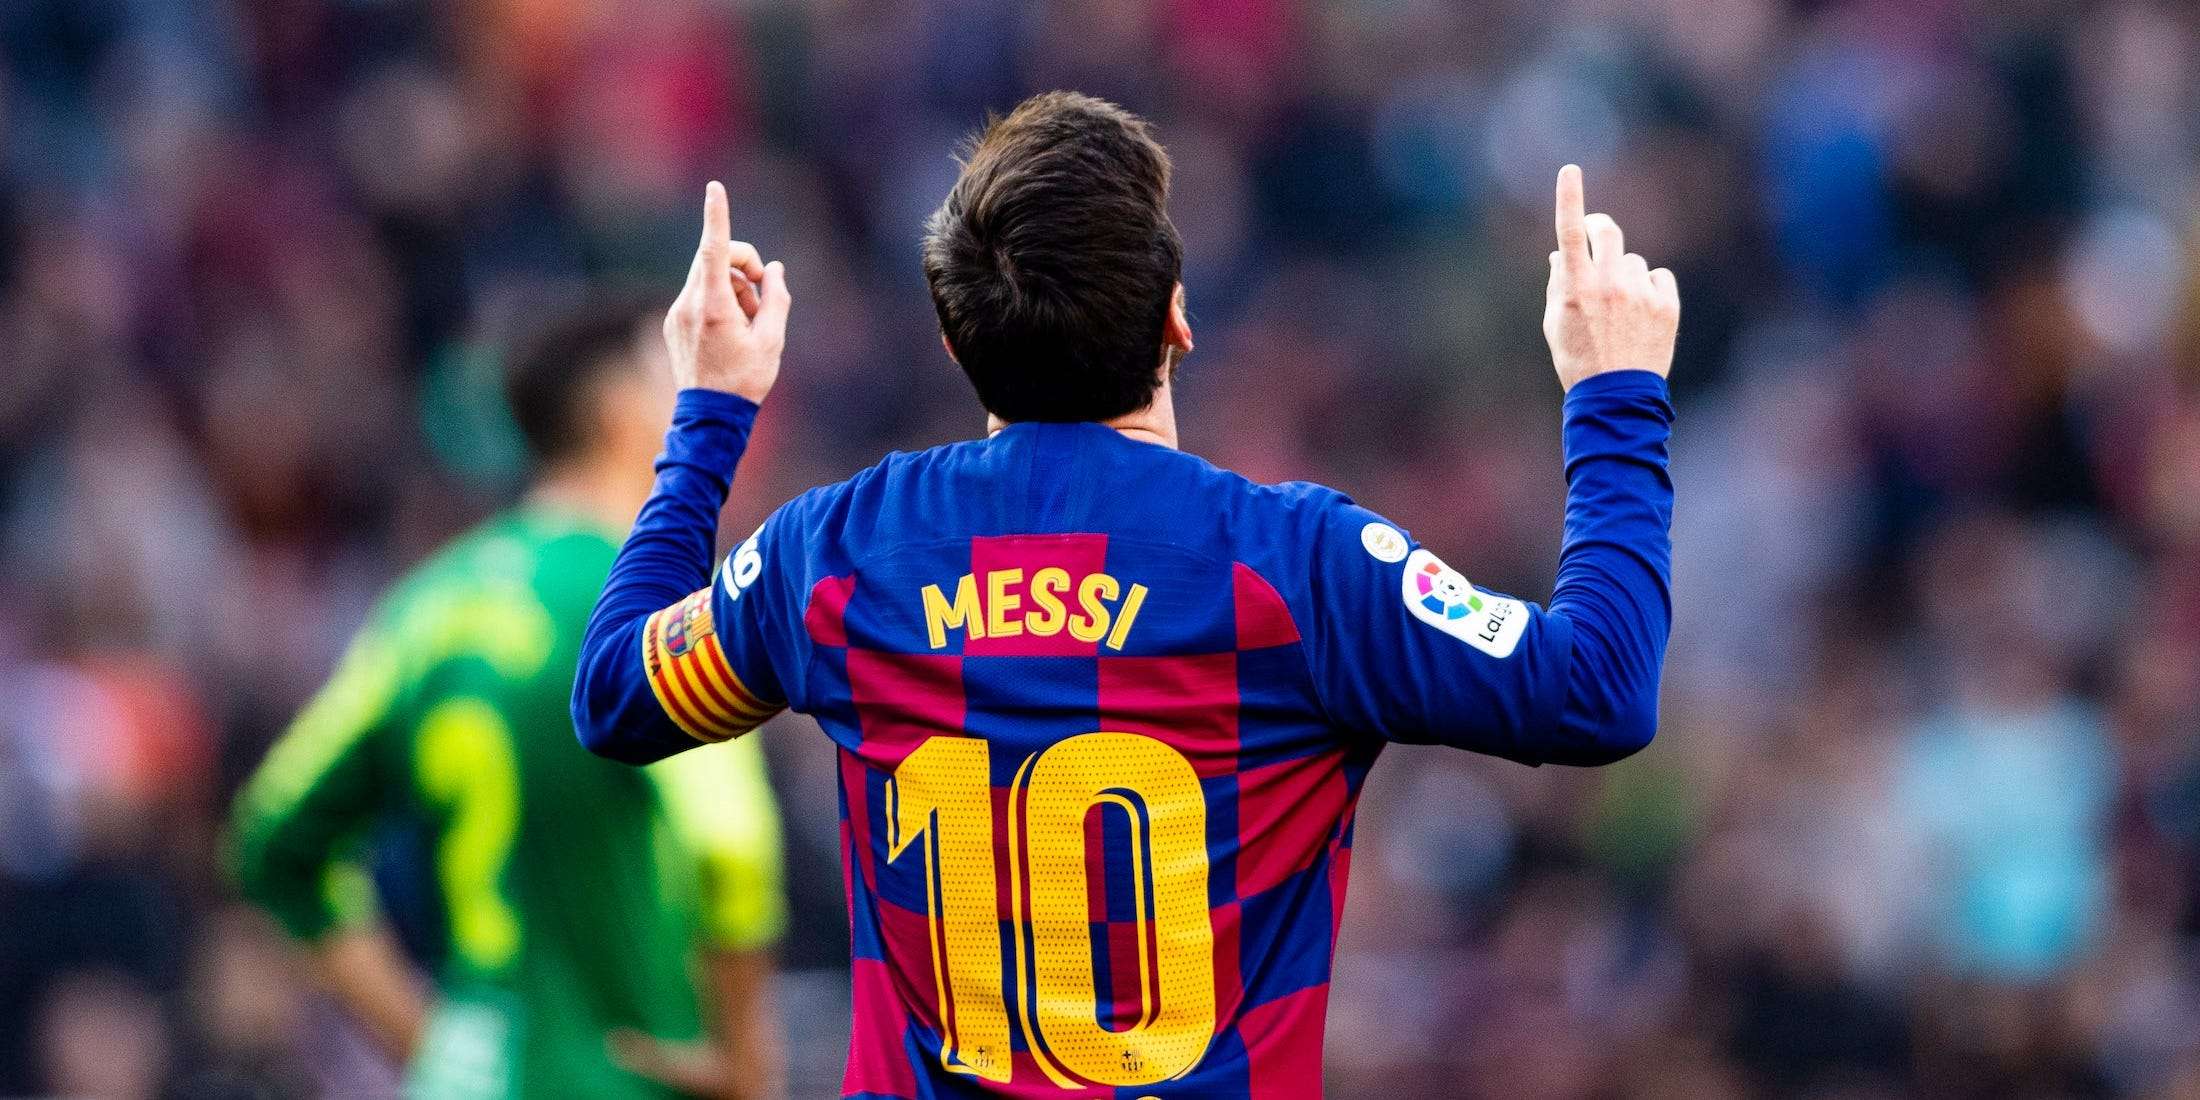 Belum Pasti Barca Belum Sodorkan Kontrak Baru Untuk Messi Berita Liga Spanyol Masa depan Lionel Messi di Barcelona masih jadi topik perbincangan hangat